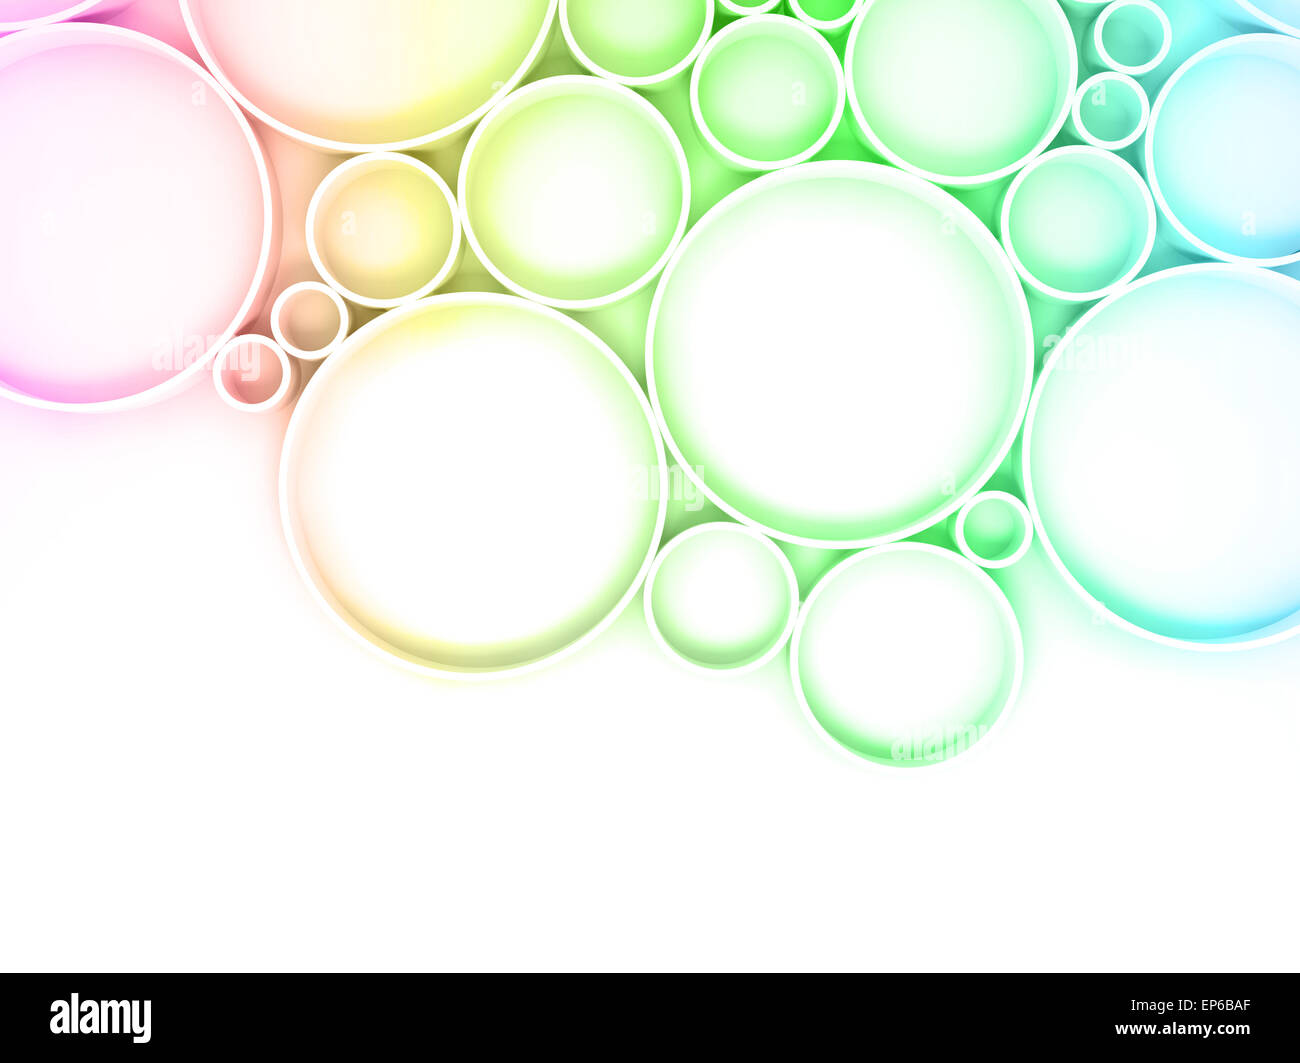 Abstract sfondo digitale pattern con anelli colorati su sfondo bianco, gradiente luminoso filtro tonale, 3d illustrazione Foto Stock